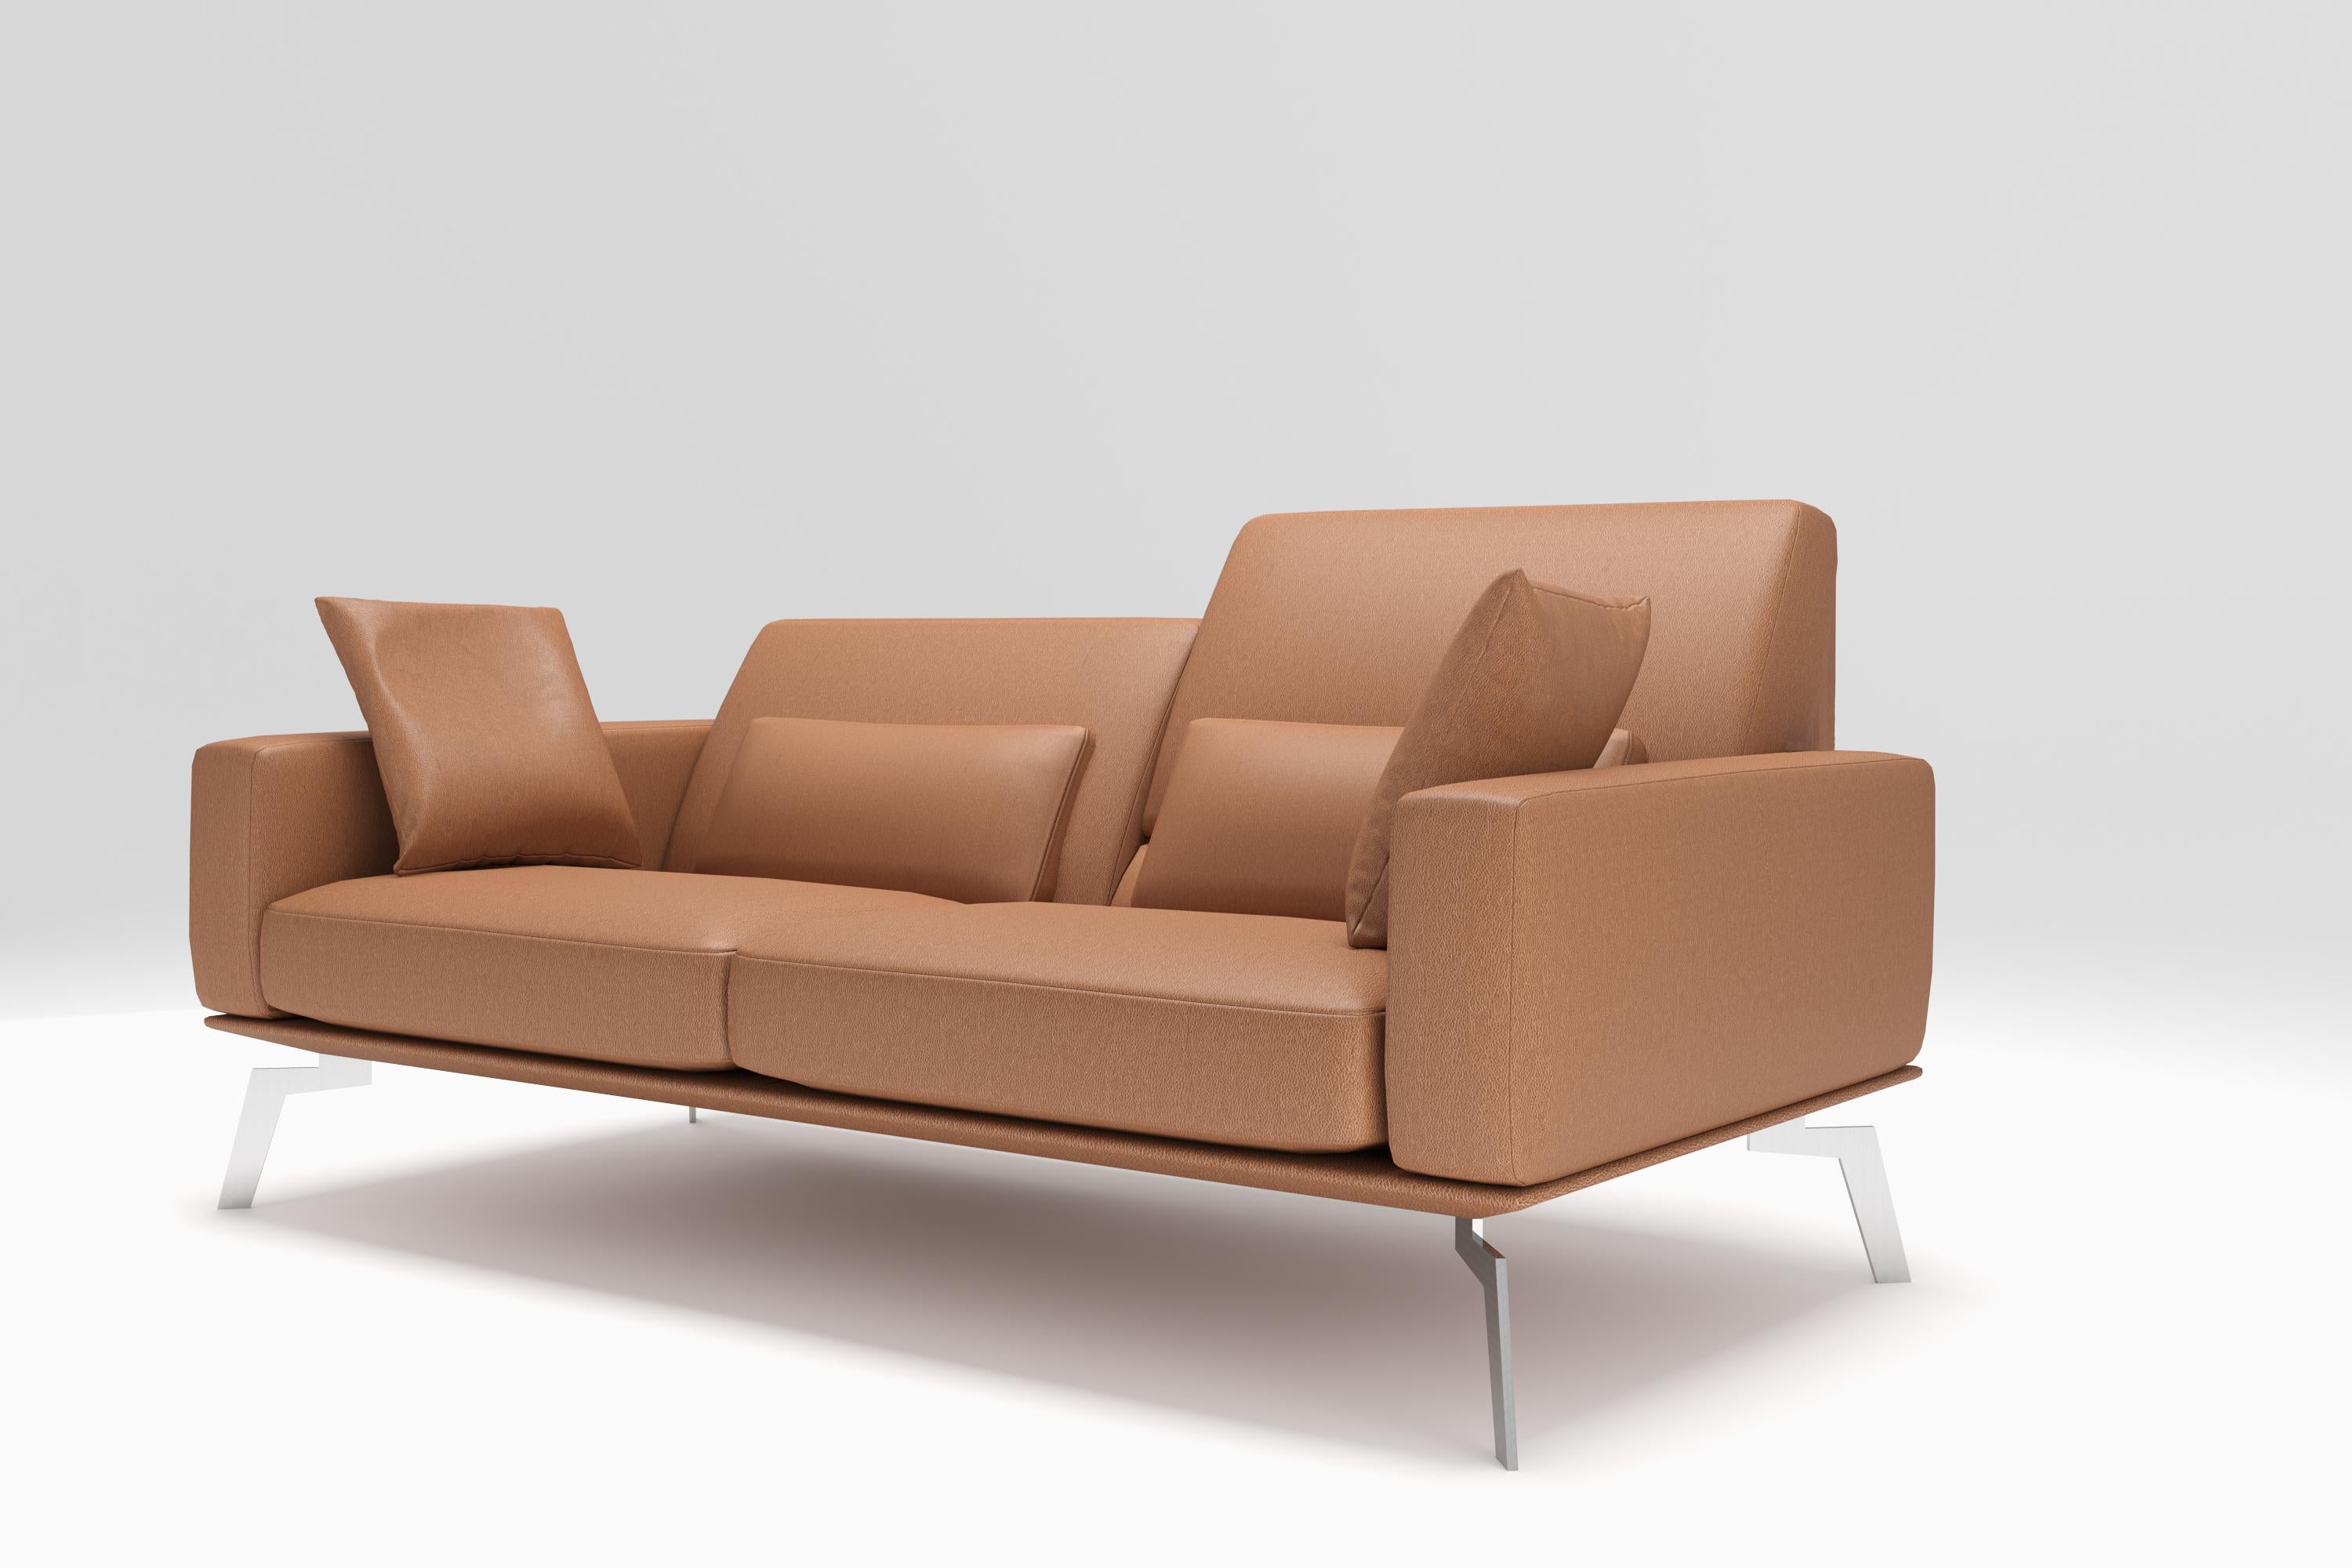 Als schwebende Insel der Ruhe scheint das elegante Sofamodell DS-87 mit seiner schlanken Form im Raum zu schweben, wo es sich nahtlos in jede moderne Umgebung einfügt - ein Polstermöbel, das mit sich selbst im Reinen ist, für den urbanen